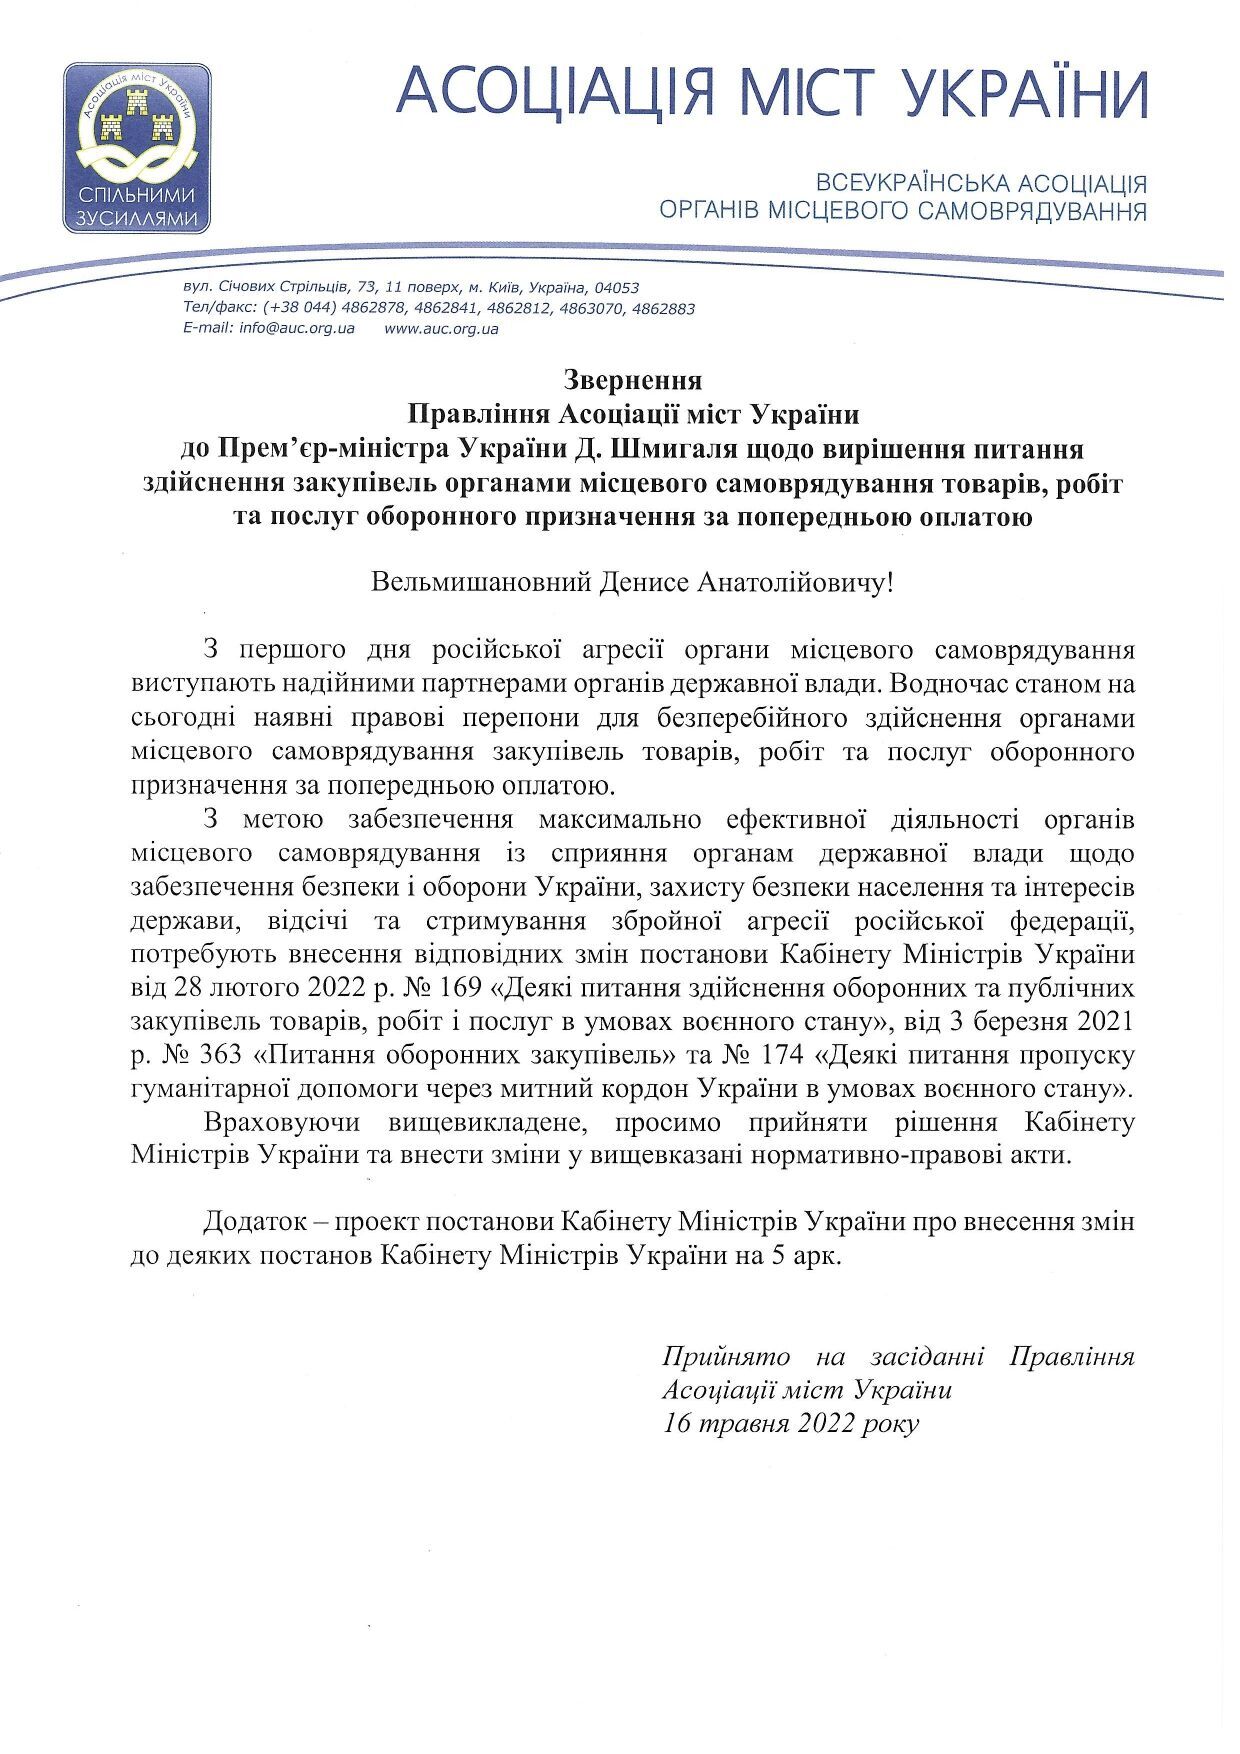 Обращение Правления от Ассоциации Городов Украины